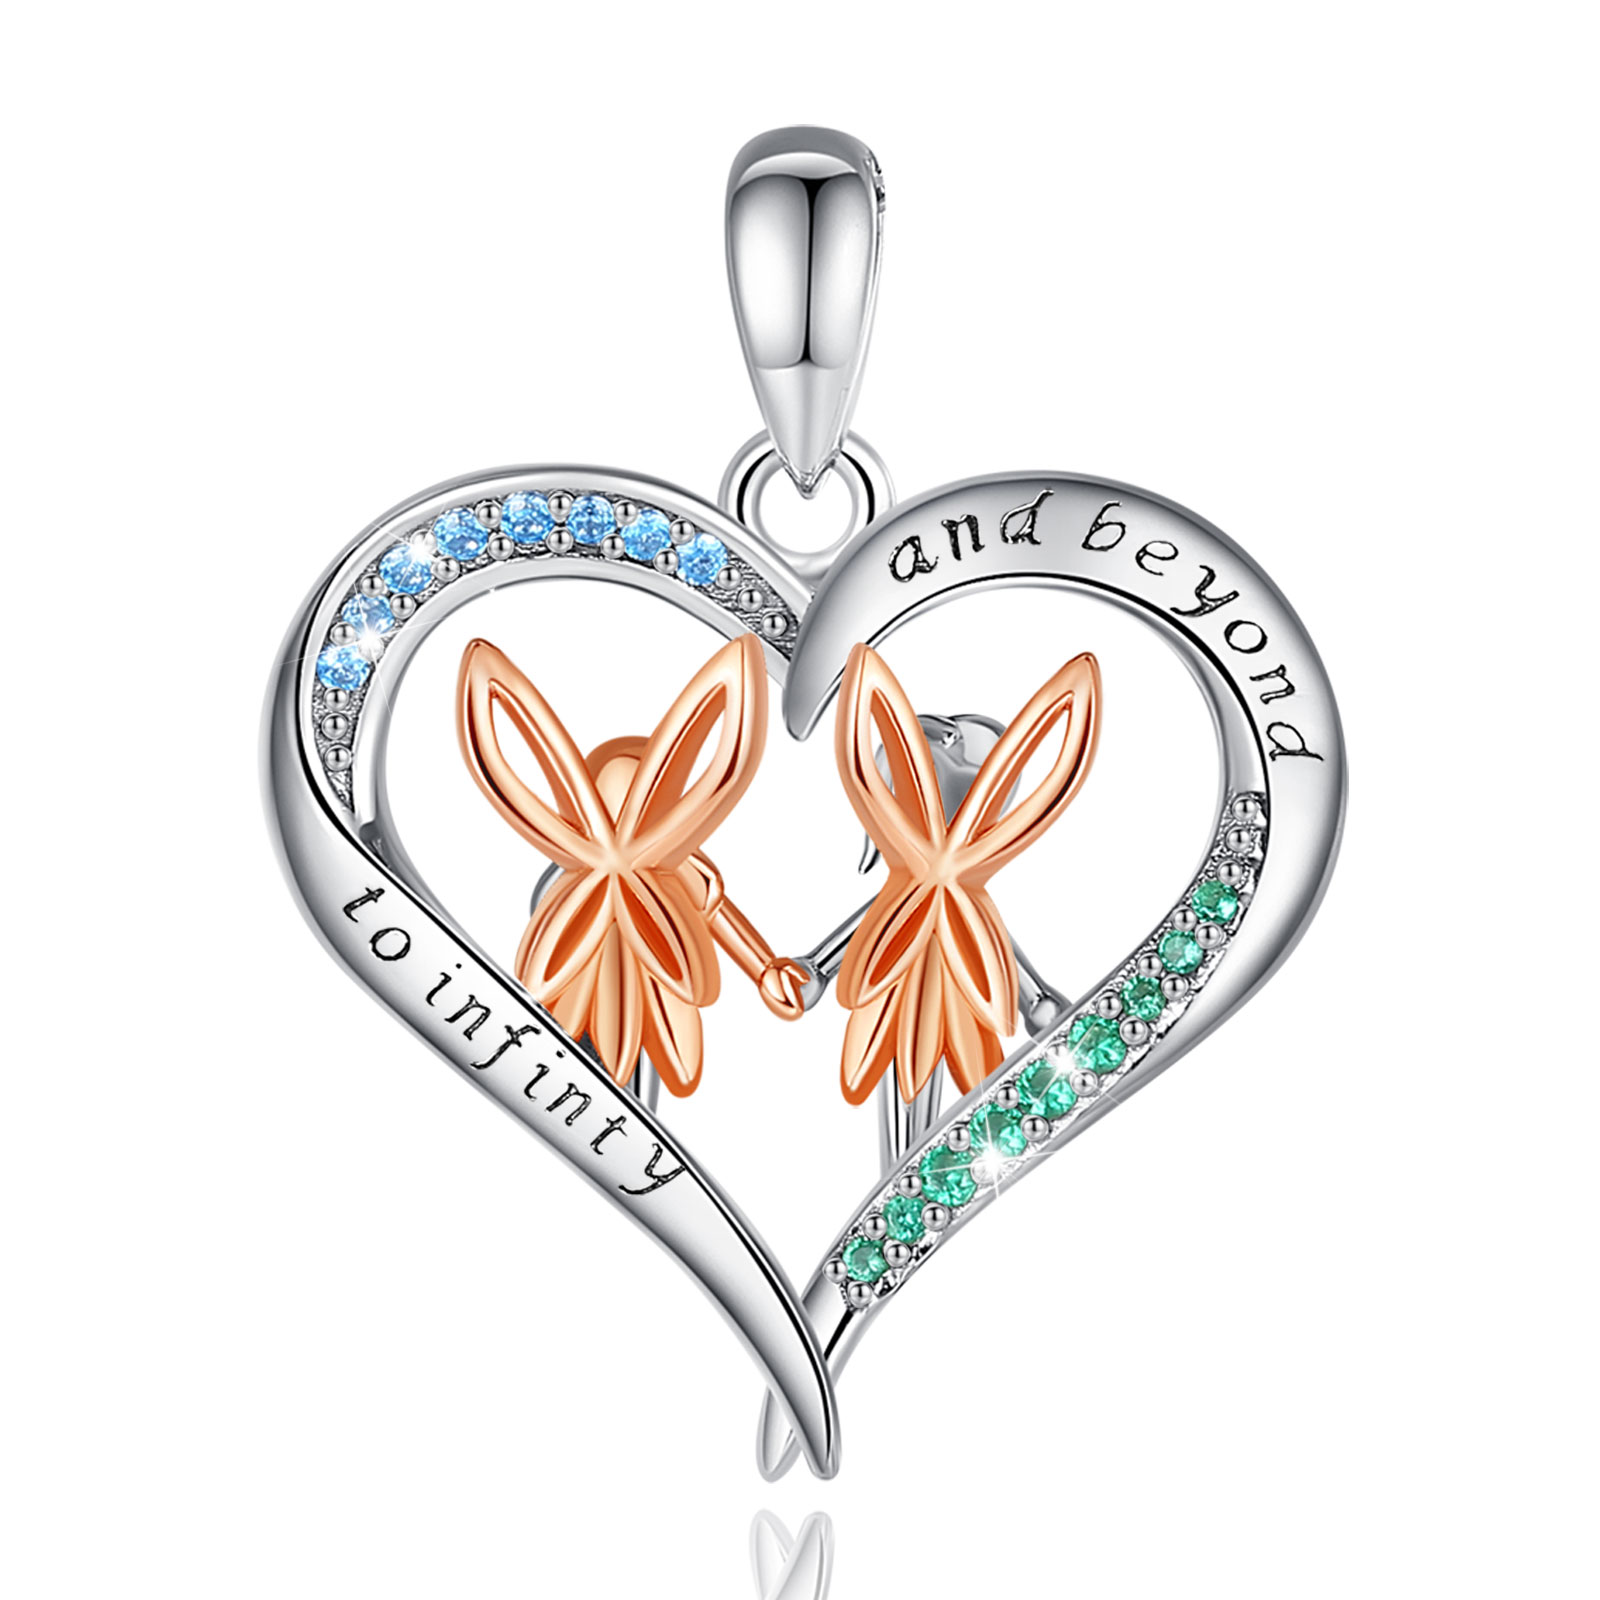 Merryshine Fine Jewellery Bestfriends Heart Pendant 925 Sterling Silver Chain Necklace